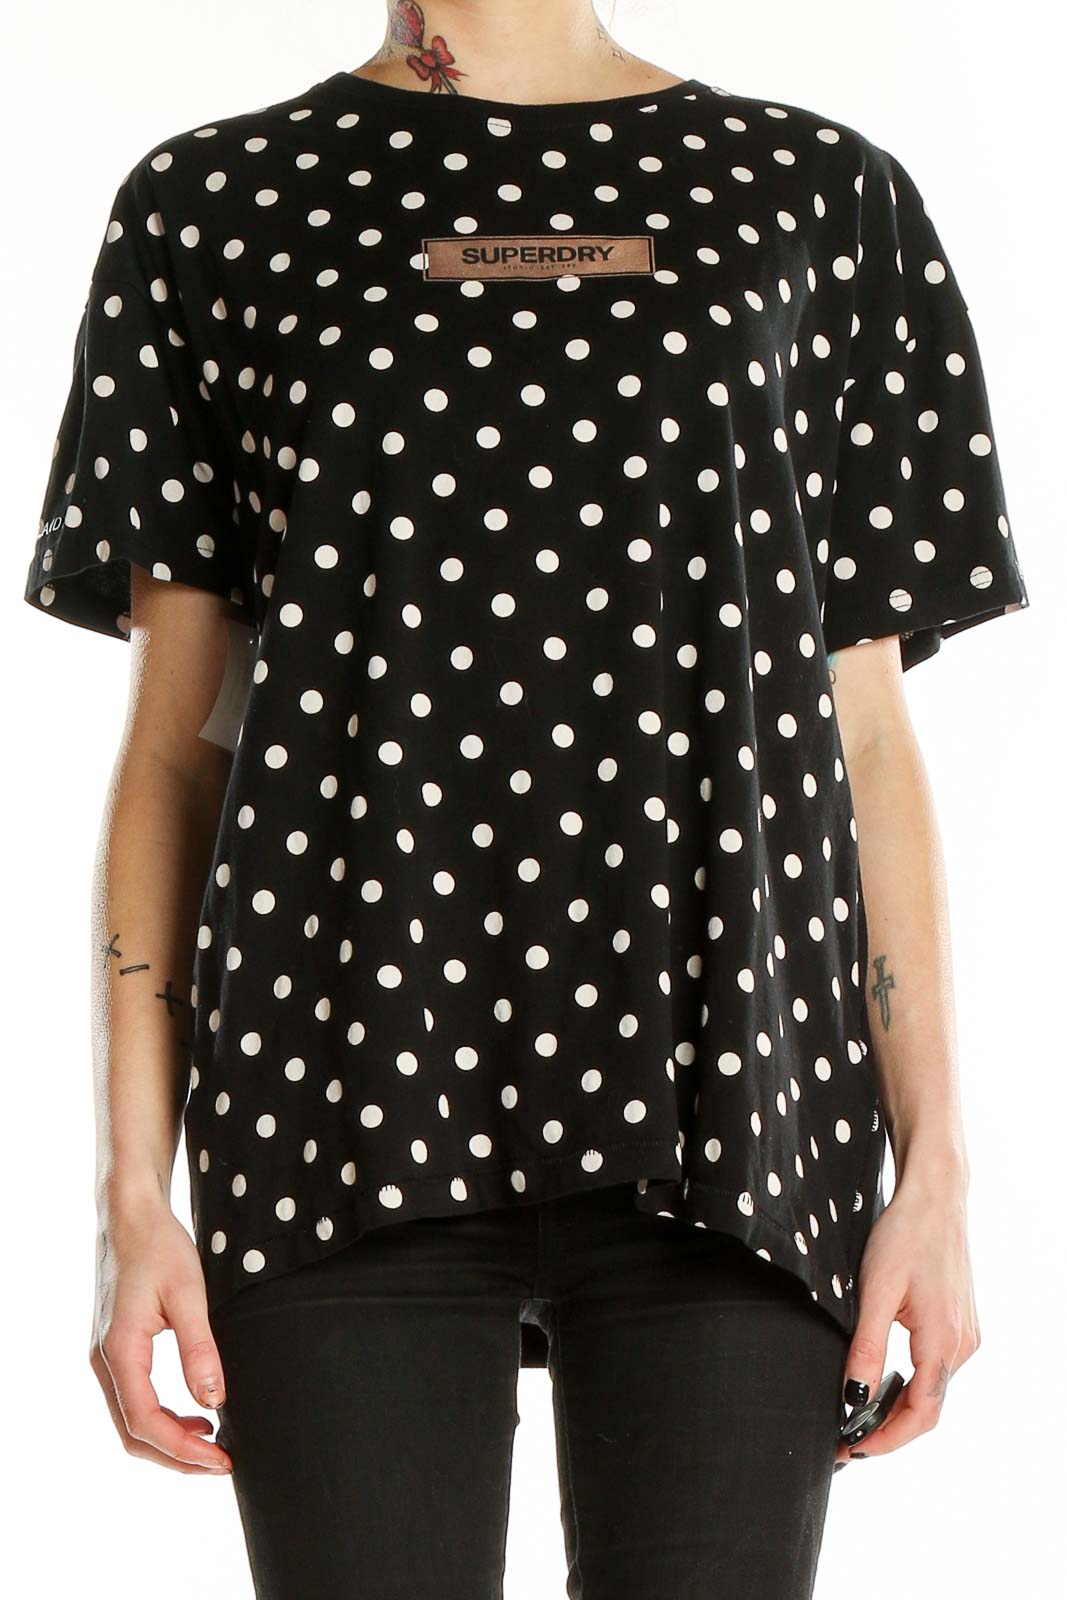 Black Polka Dots T-Shirt Front